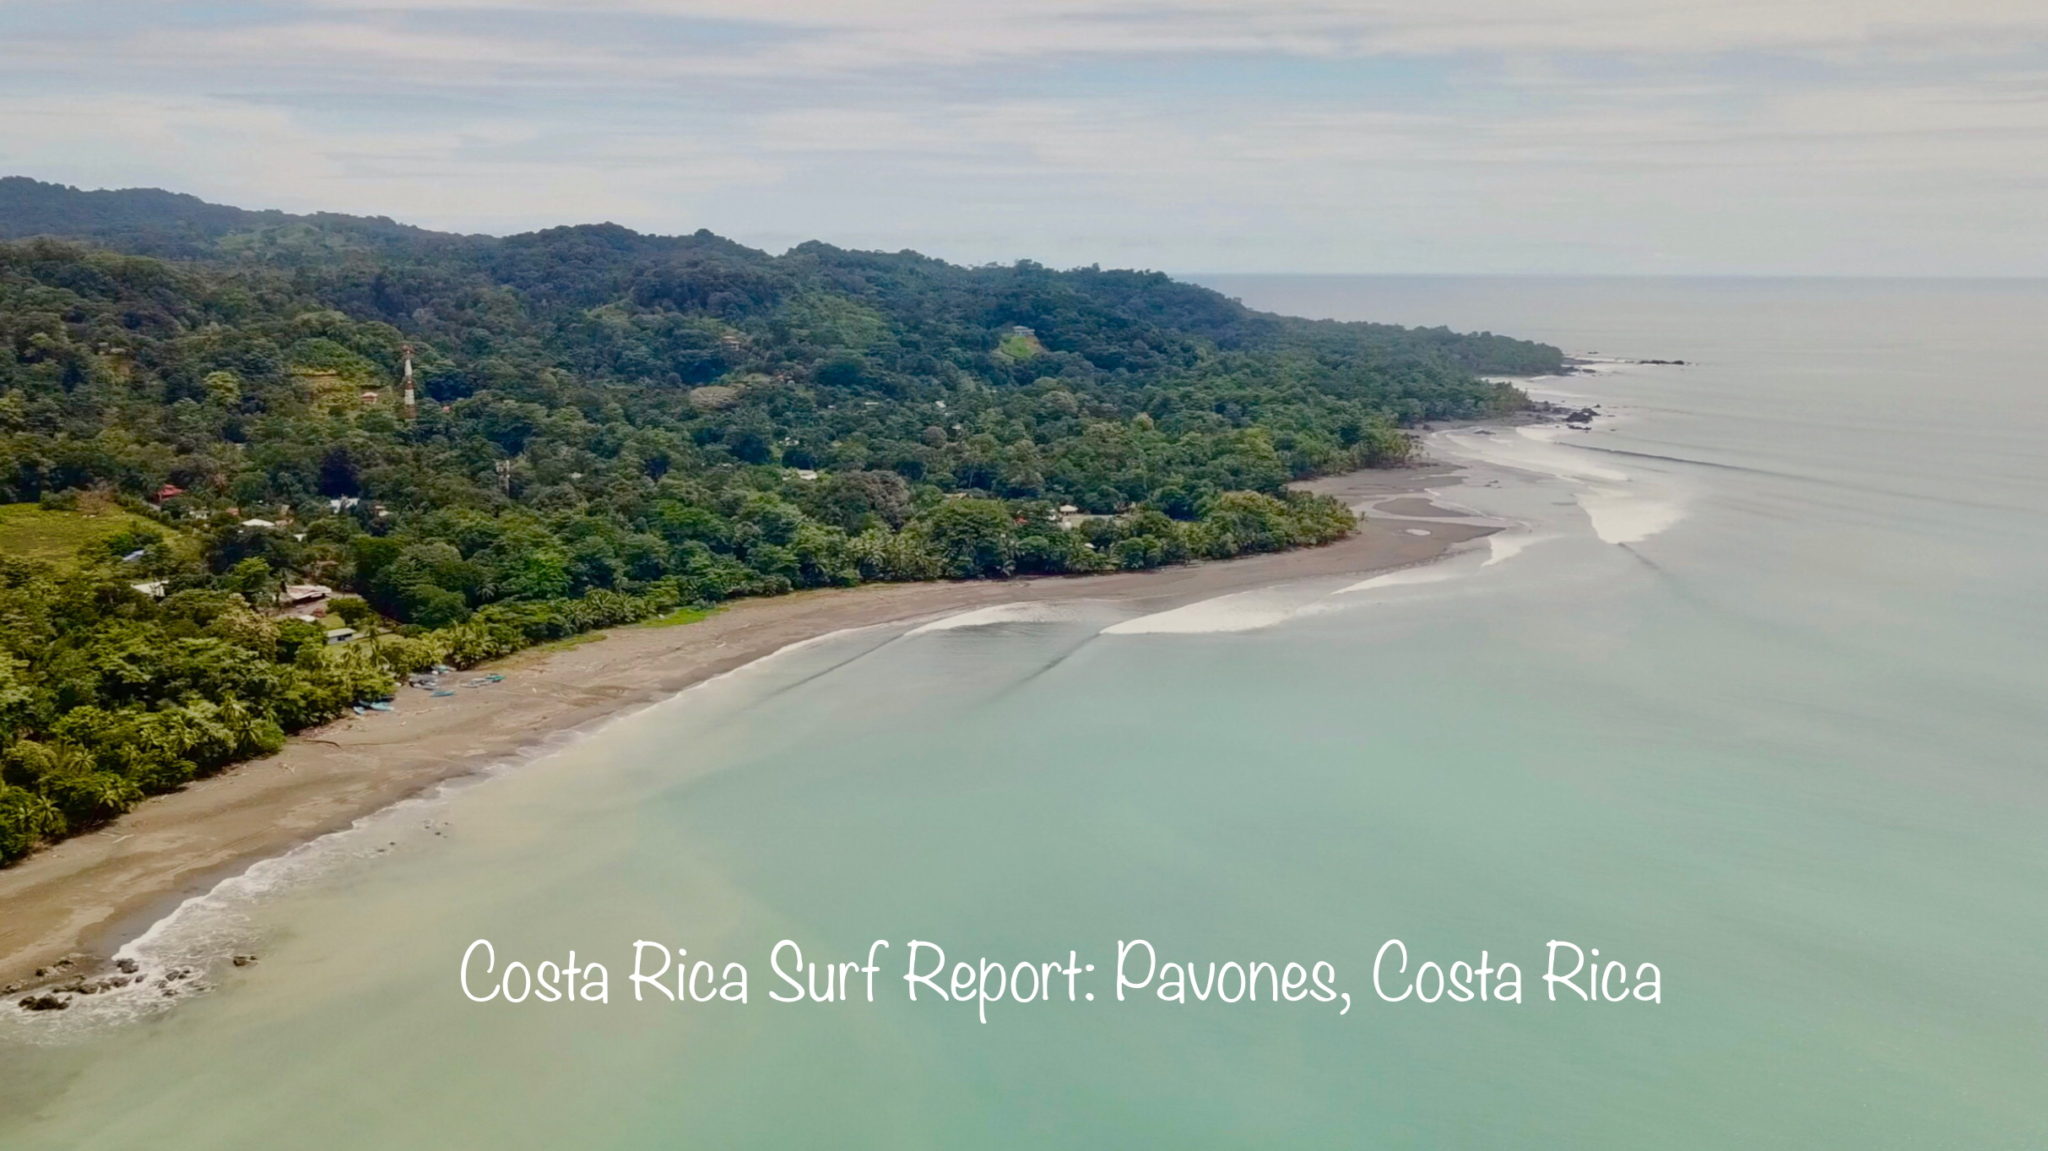 Costa Rica Surf Report - Pavones